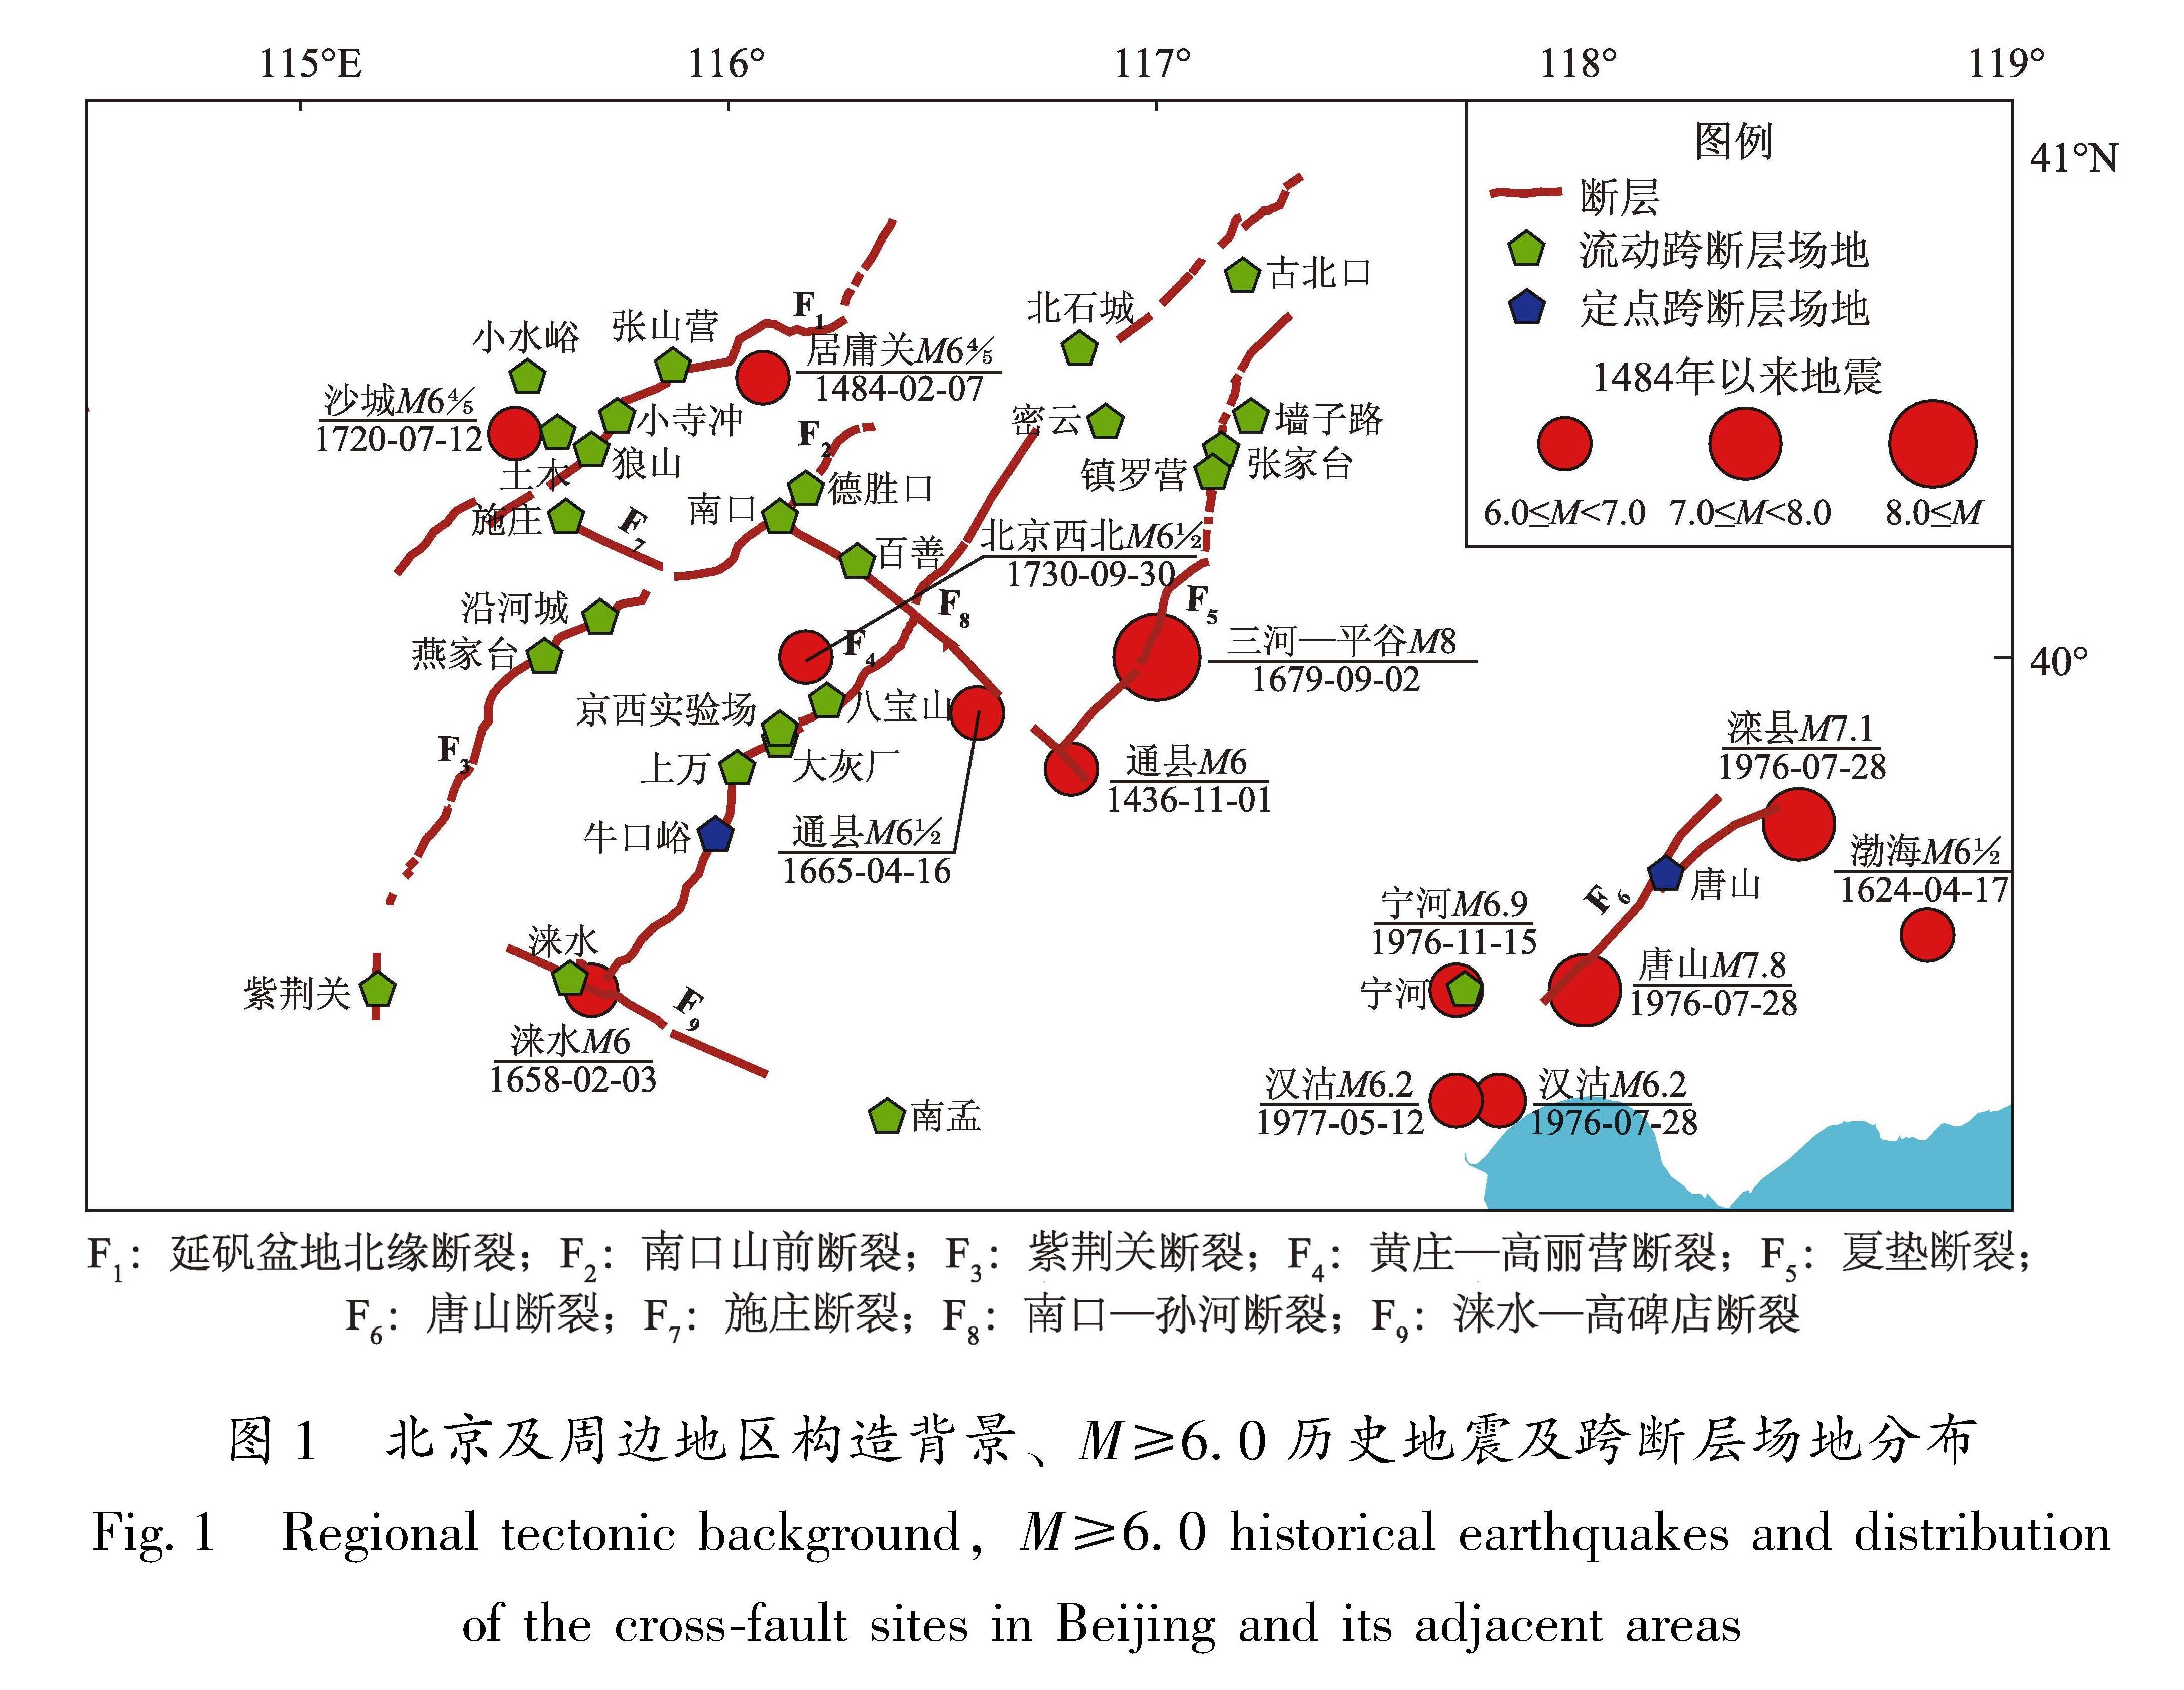 图1 北京及周边地区构造背景、M≥6.0历史地震及跨断层场地分布<br/>Fig.1 Regional tectonic background,M≥6.0 historical earthquakes and distribution of the cross-fault sites in Beijing and its adjacent areas